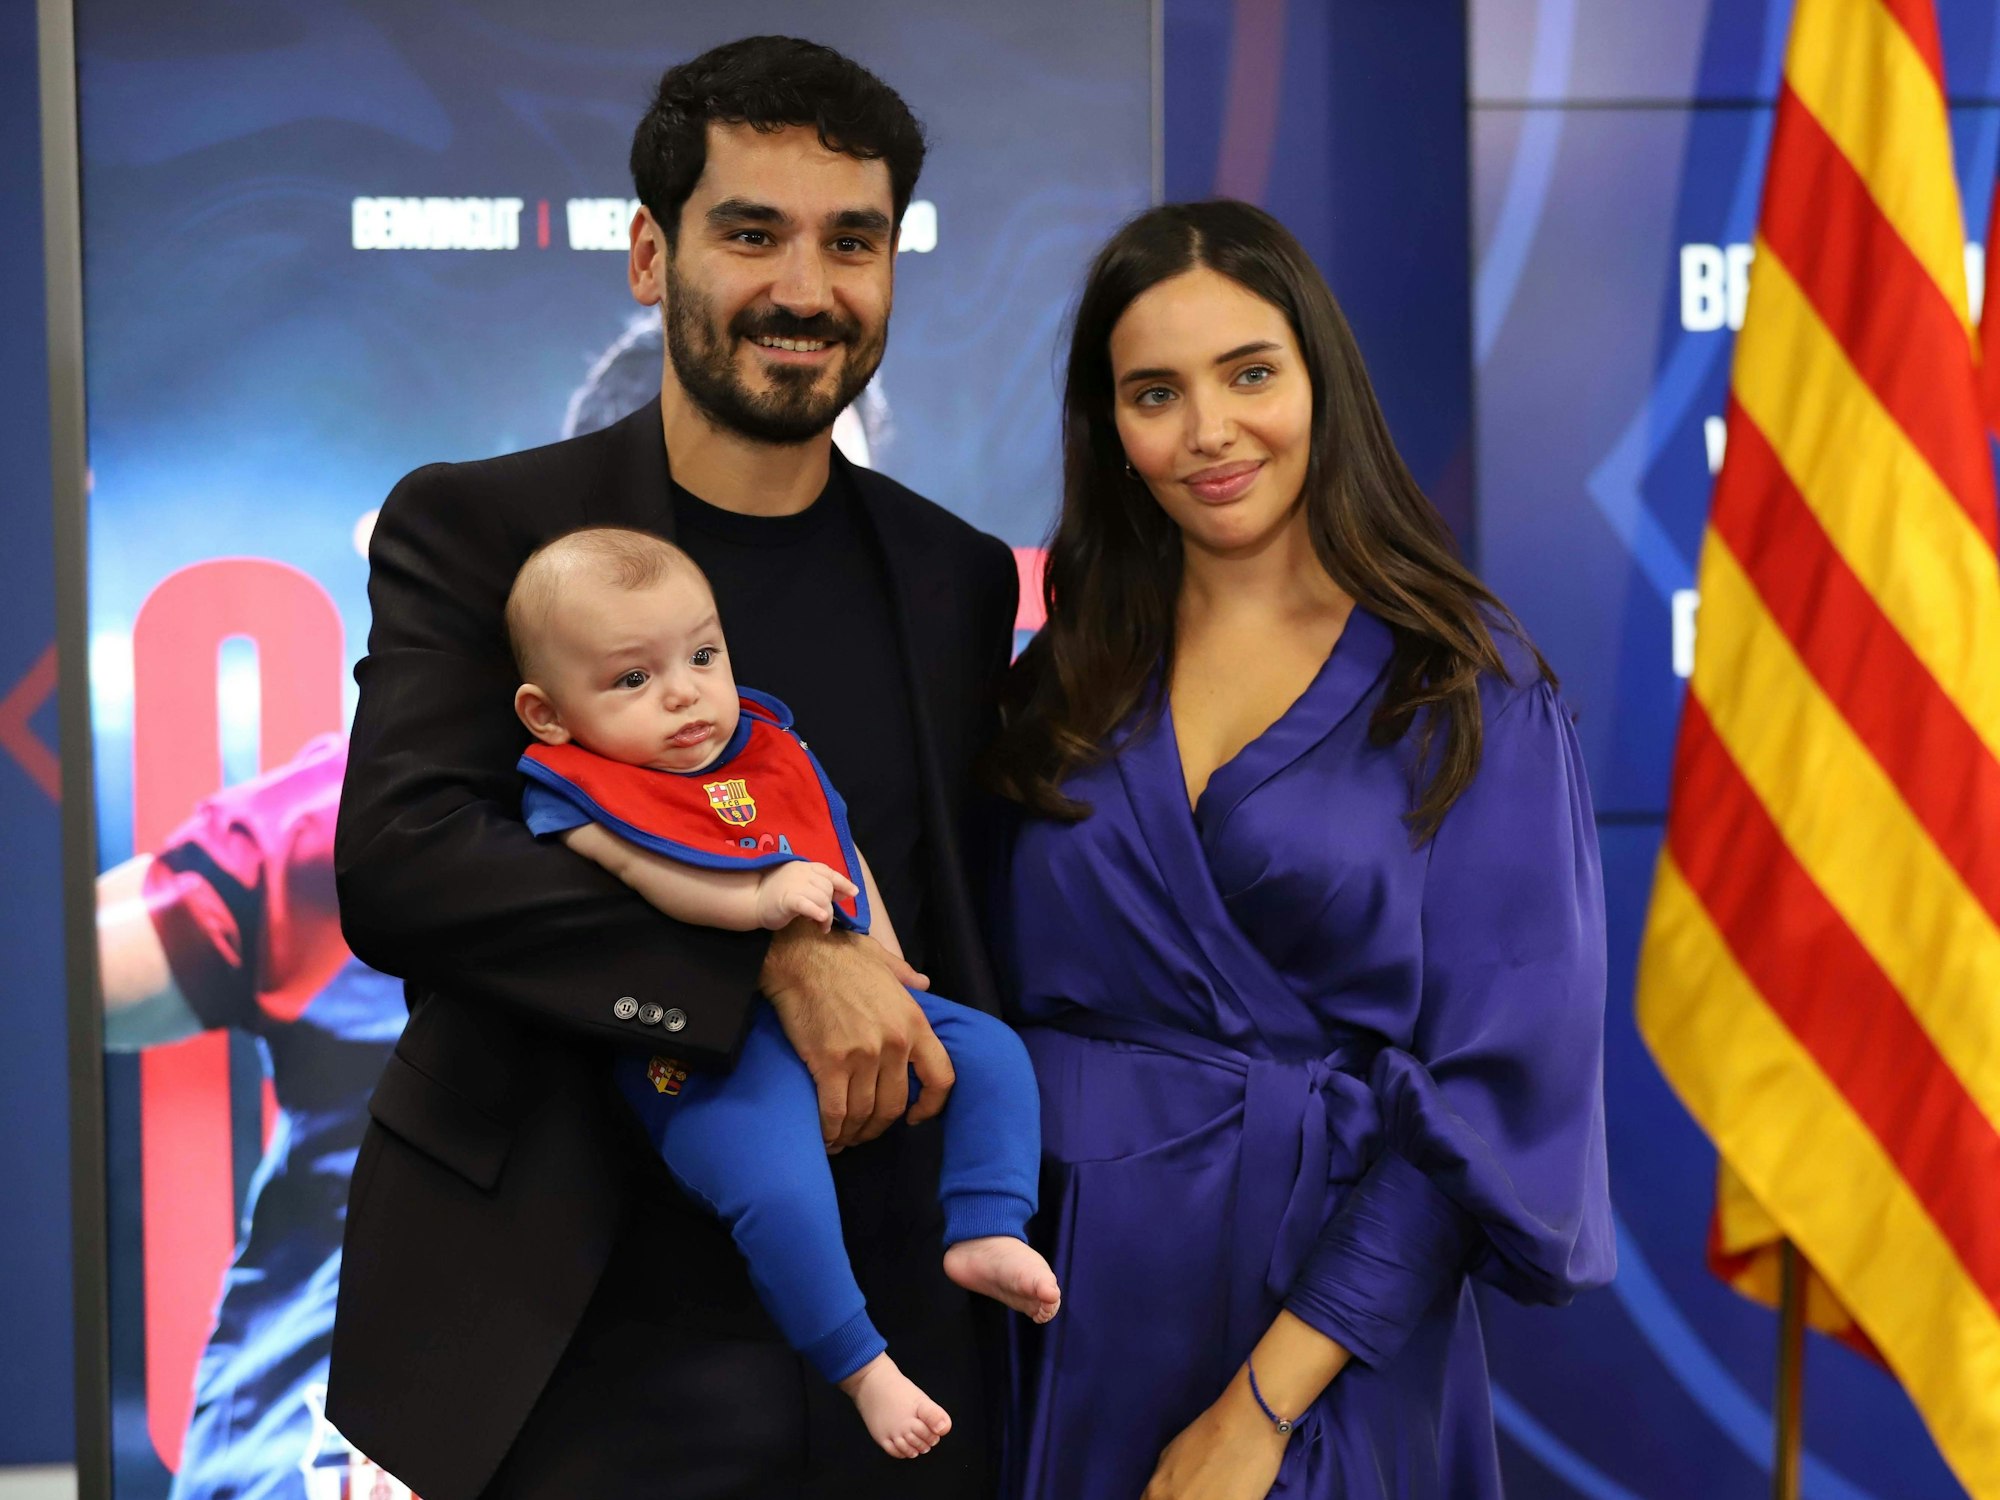 Ilkay Gündogan mit seinem Baby im Arm neben seiner Frau Sara bei seiner Vorstellung als neuer Spieler des FC Barcelona.